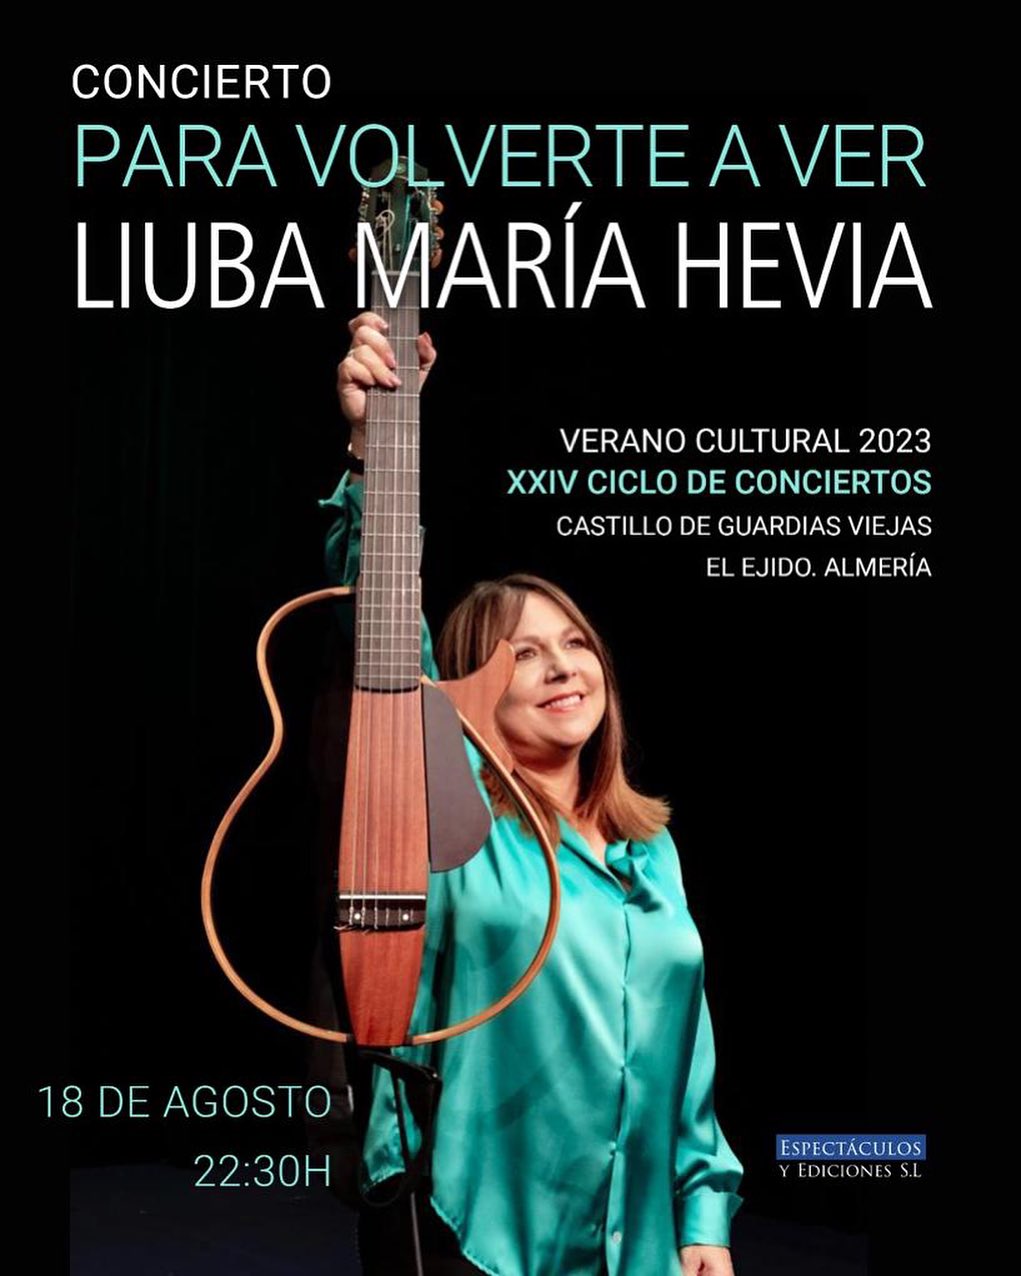 liuba maría hevia en concierto El Ejido Almería